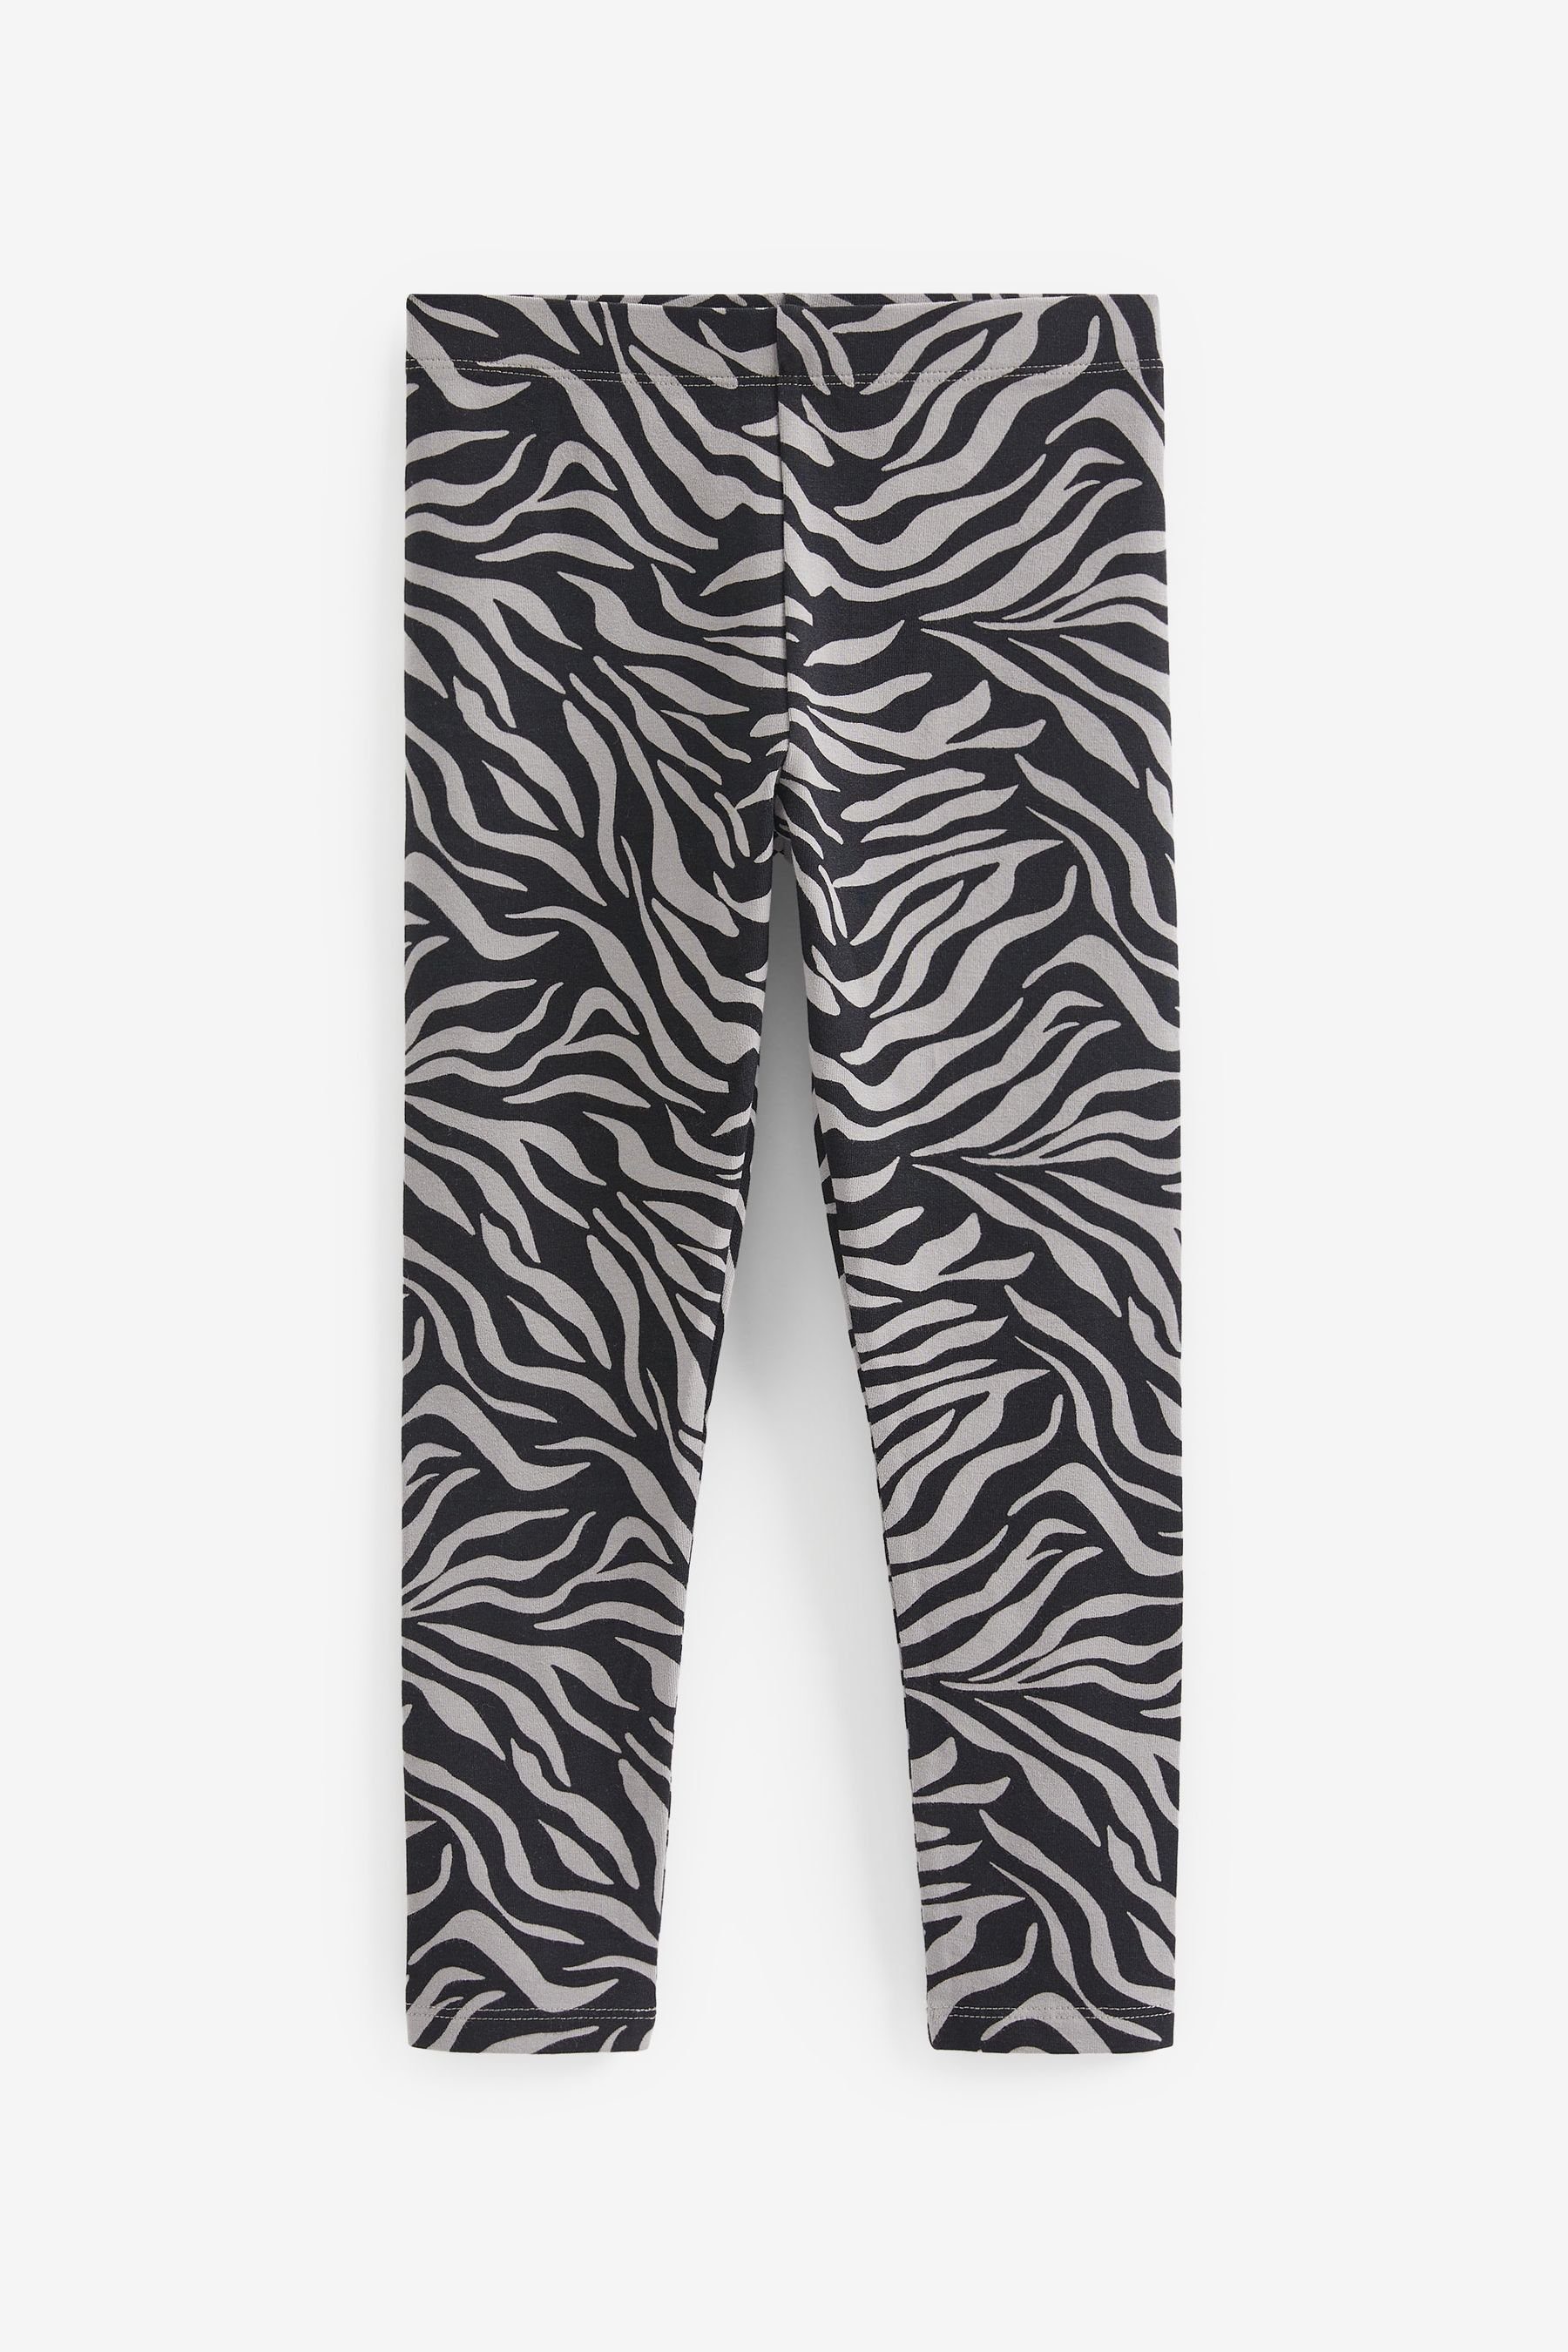 Animal Leggings Neutral/ Next Zebra Black/ Print Leggings, Print/ 5er-Pack (5-tlg) Grey/